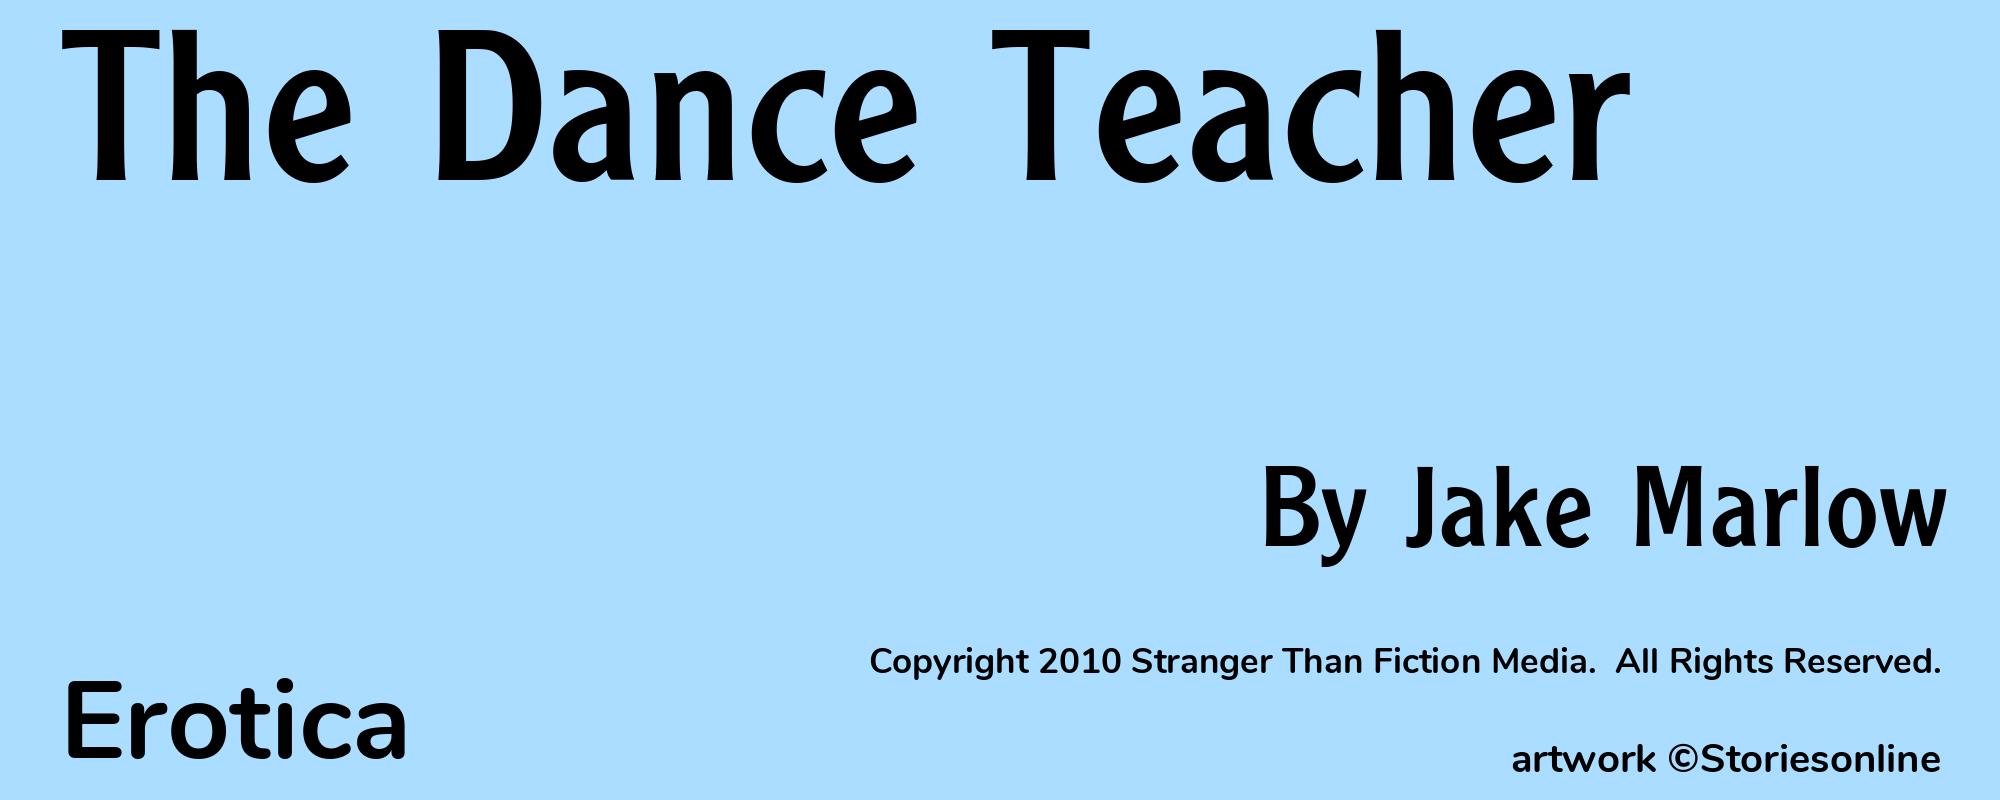 The Dance Teacher - Cover